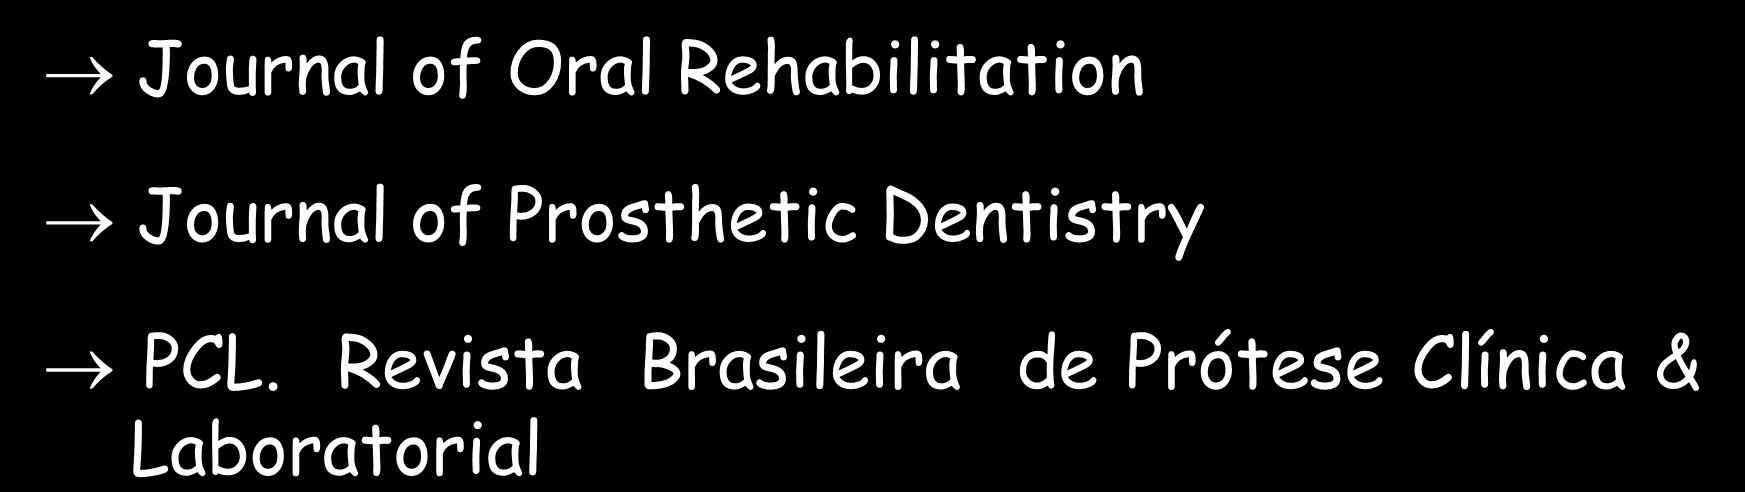 PERIÓDICOS - SUGESTÕES PRÓTESE DENTÁRIA Journal of Oral Rehabilitation Journal